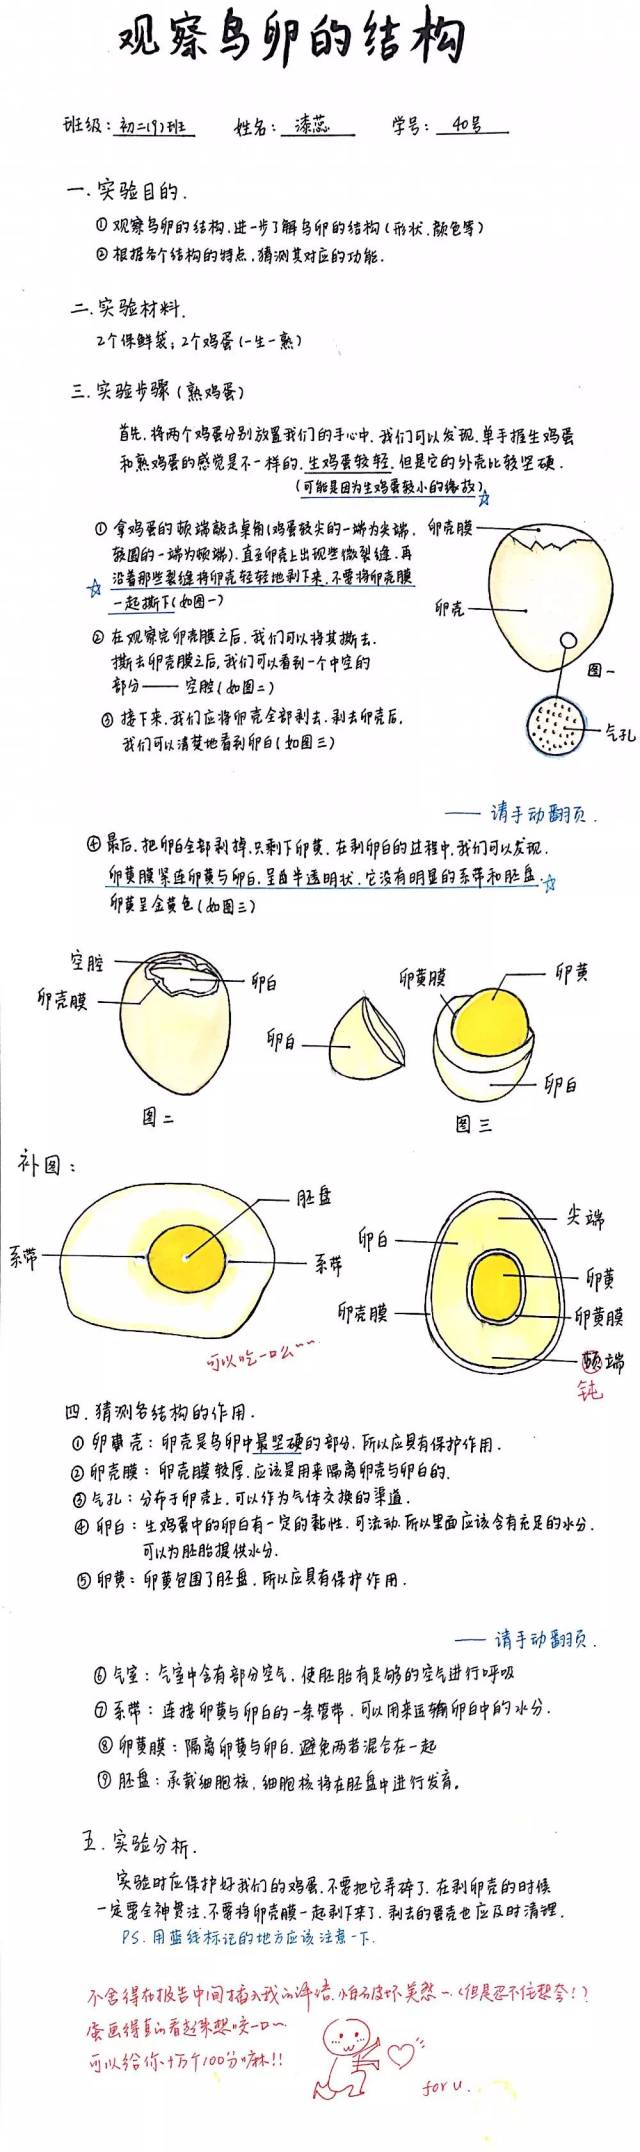 生鸡蛋的结构示意图图片